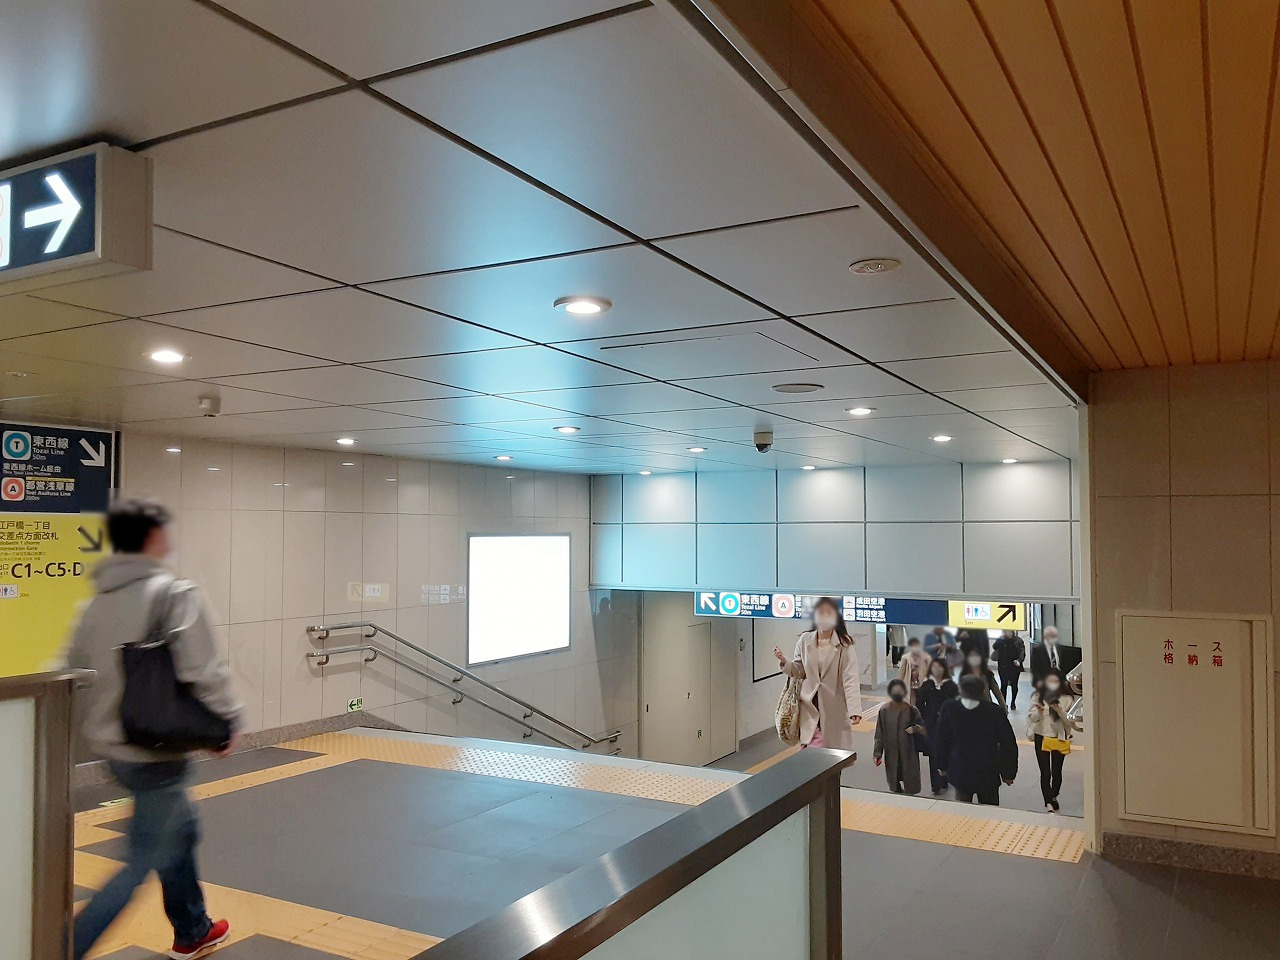 駅看板「東京メトロ／銀座線／日本橋駅」の写真です。日本橋駅の駅構内にある電飾看板です。